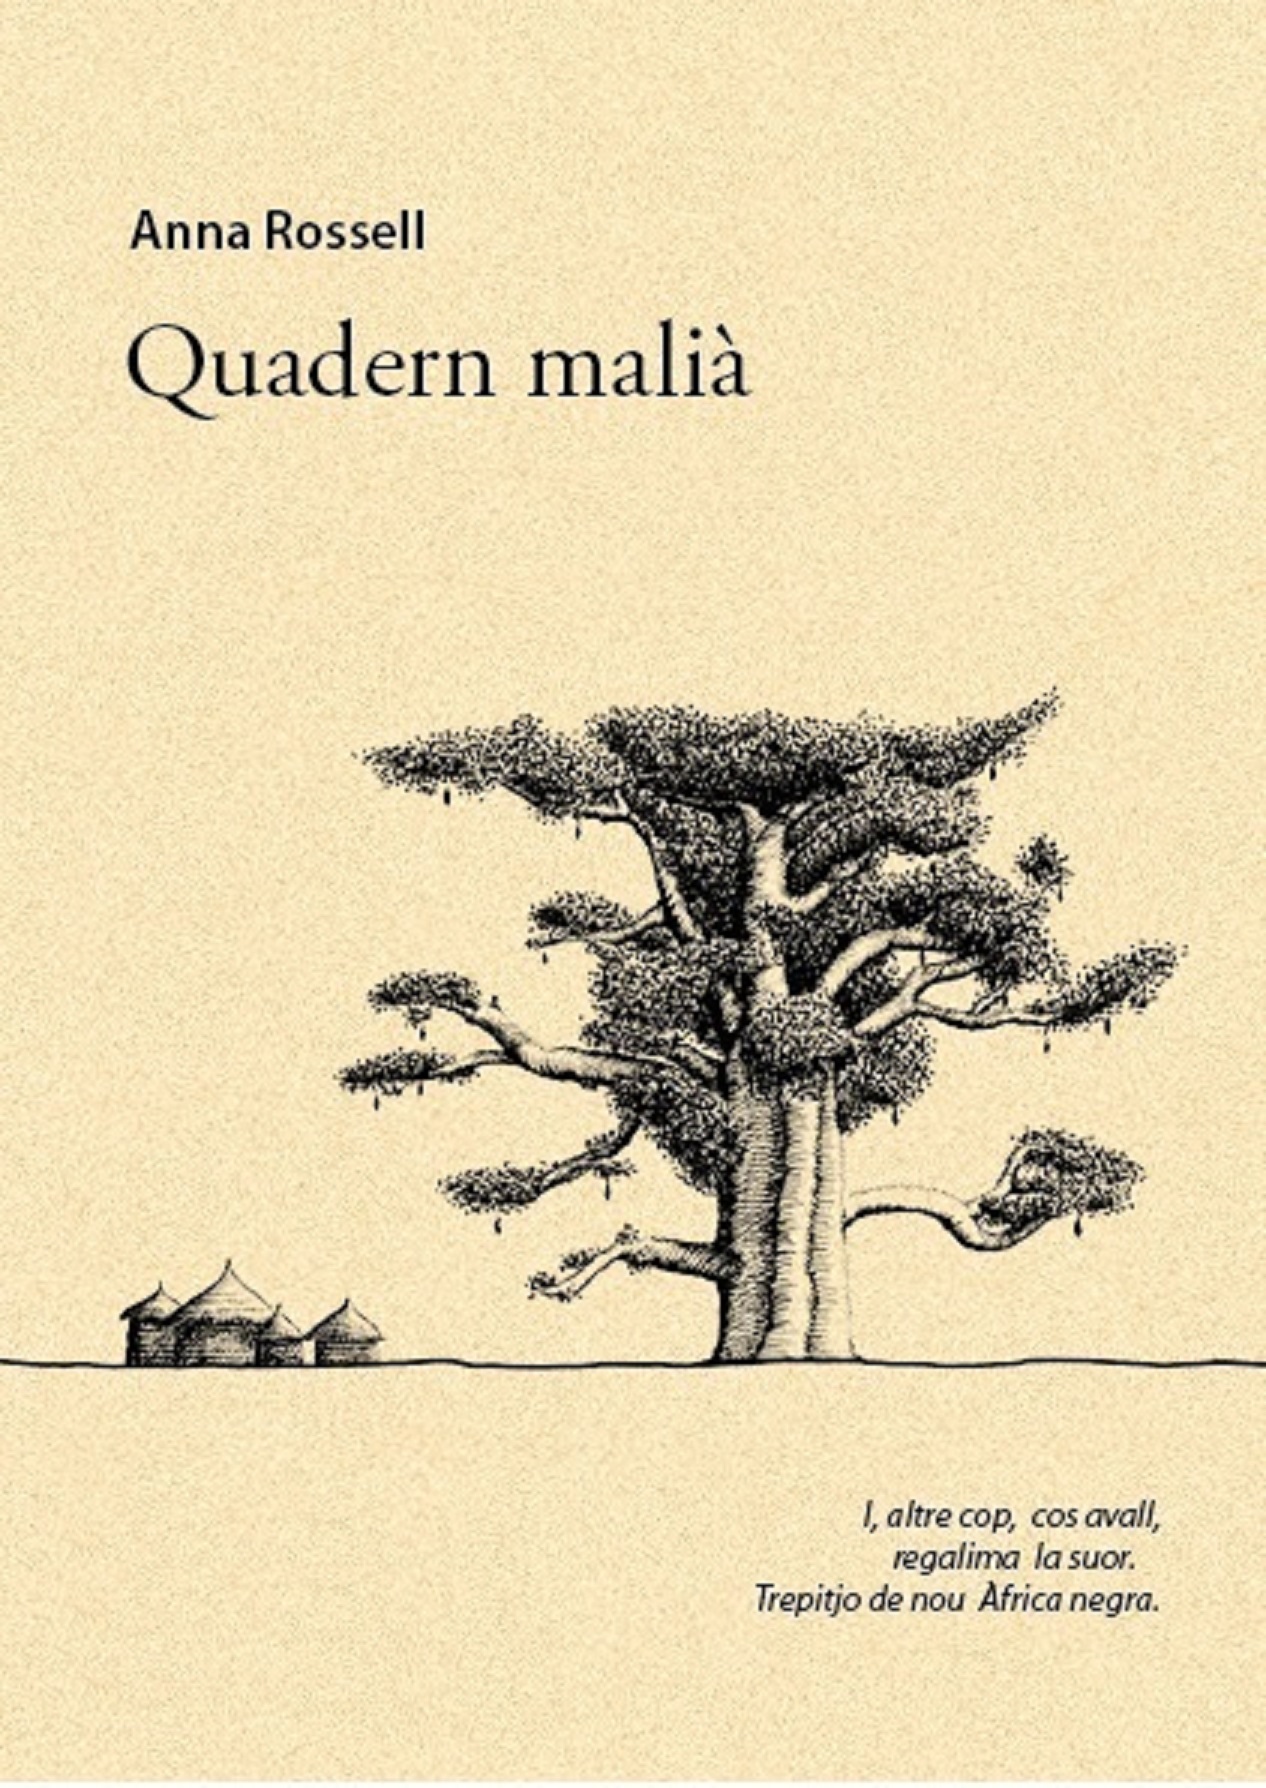 Portada del llibre de poemes "Quadern malià" (e-pub)